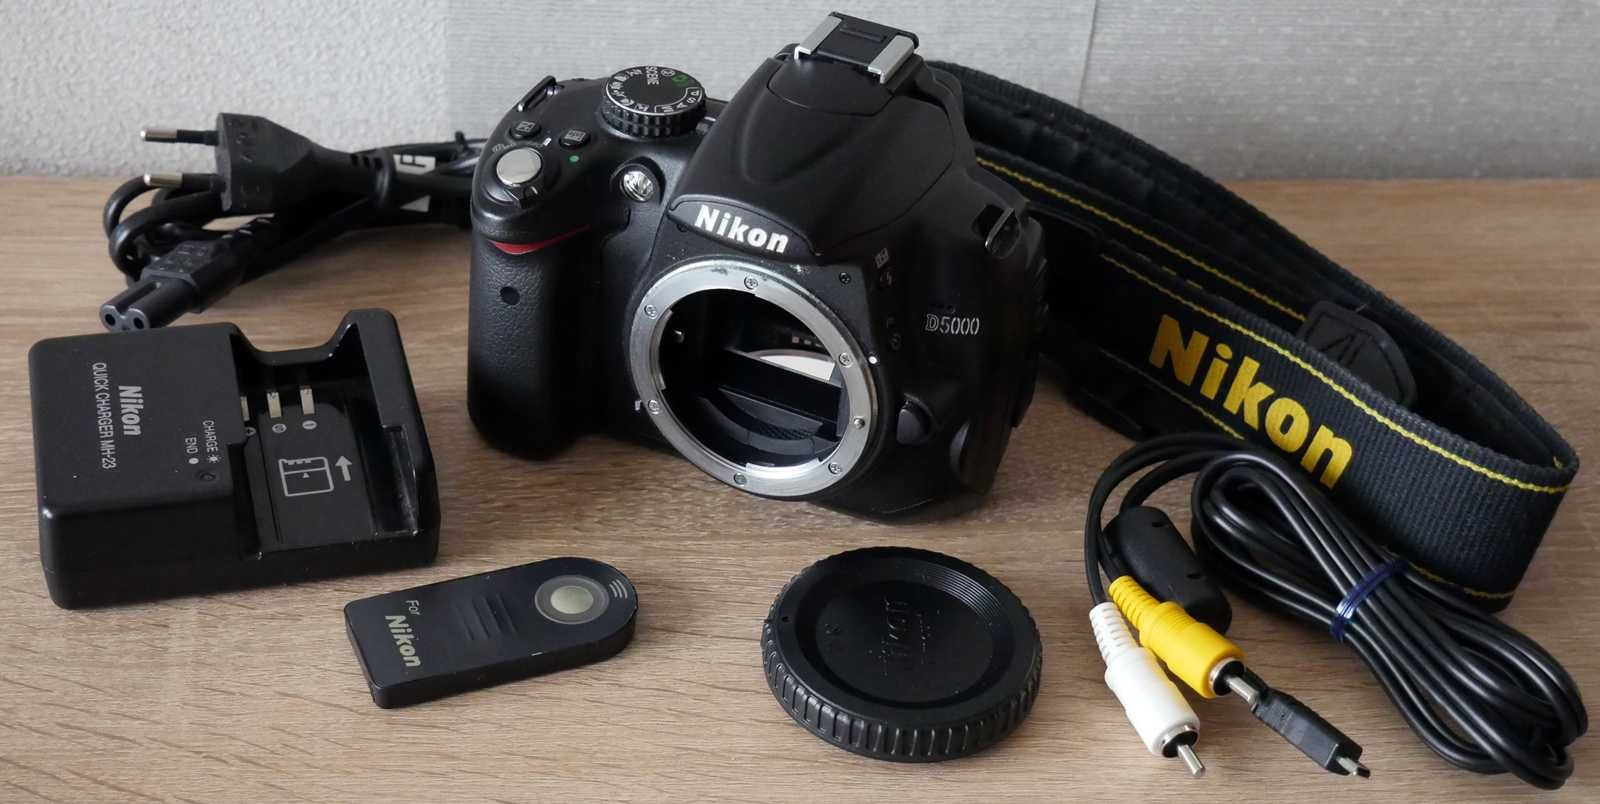 Lustrzanka Nikon D5000 stan b.dobry , 12tys zdjęć +grip